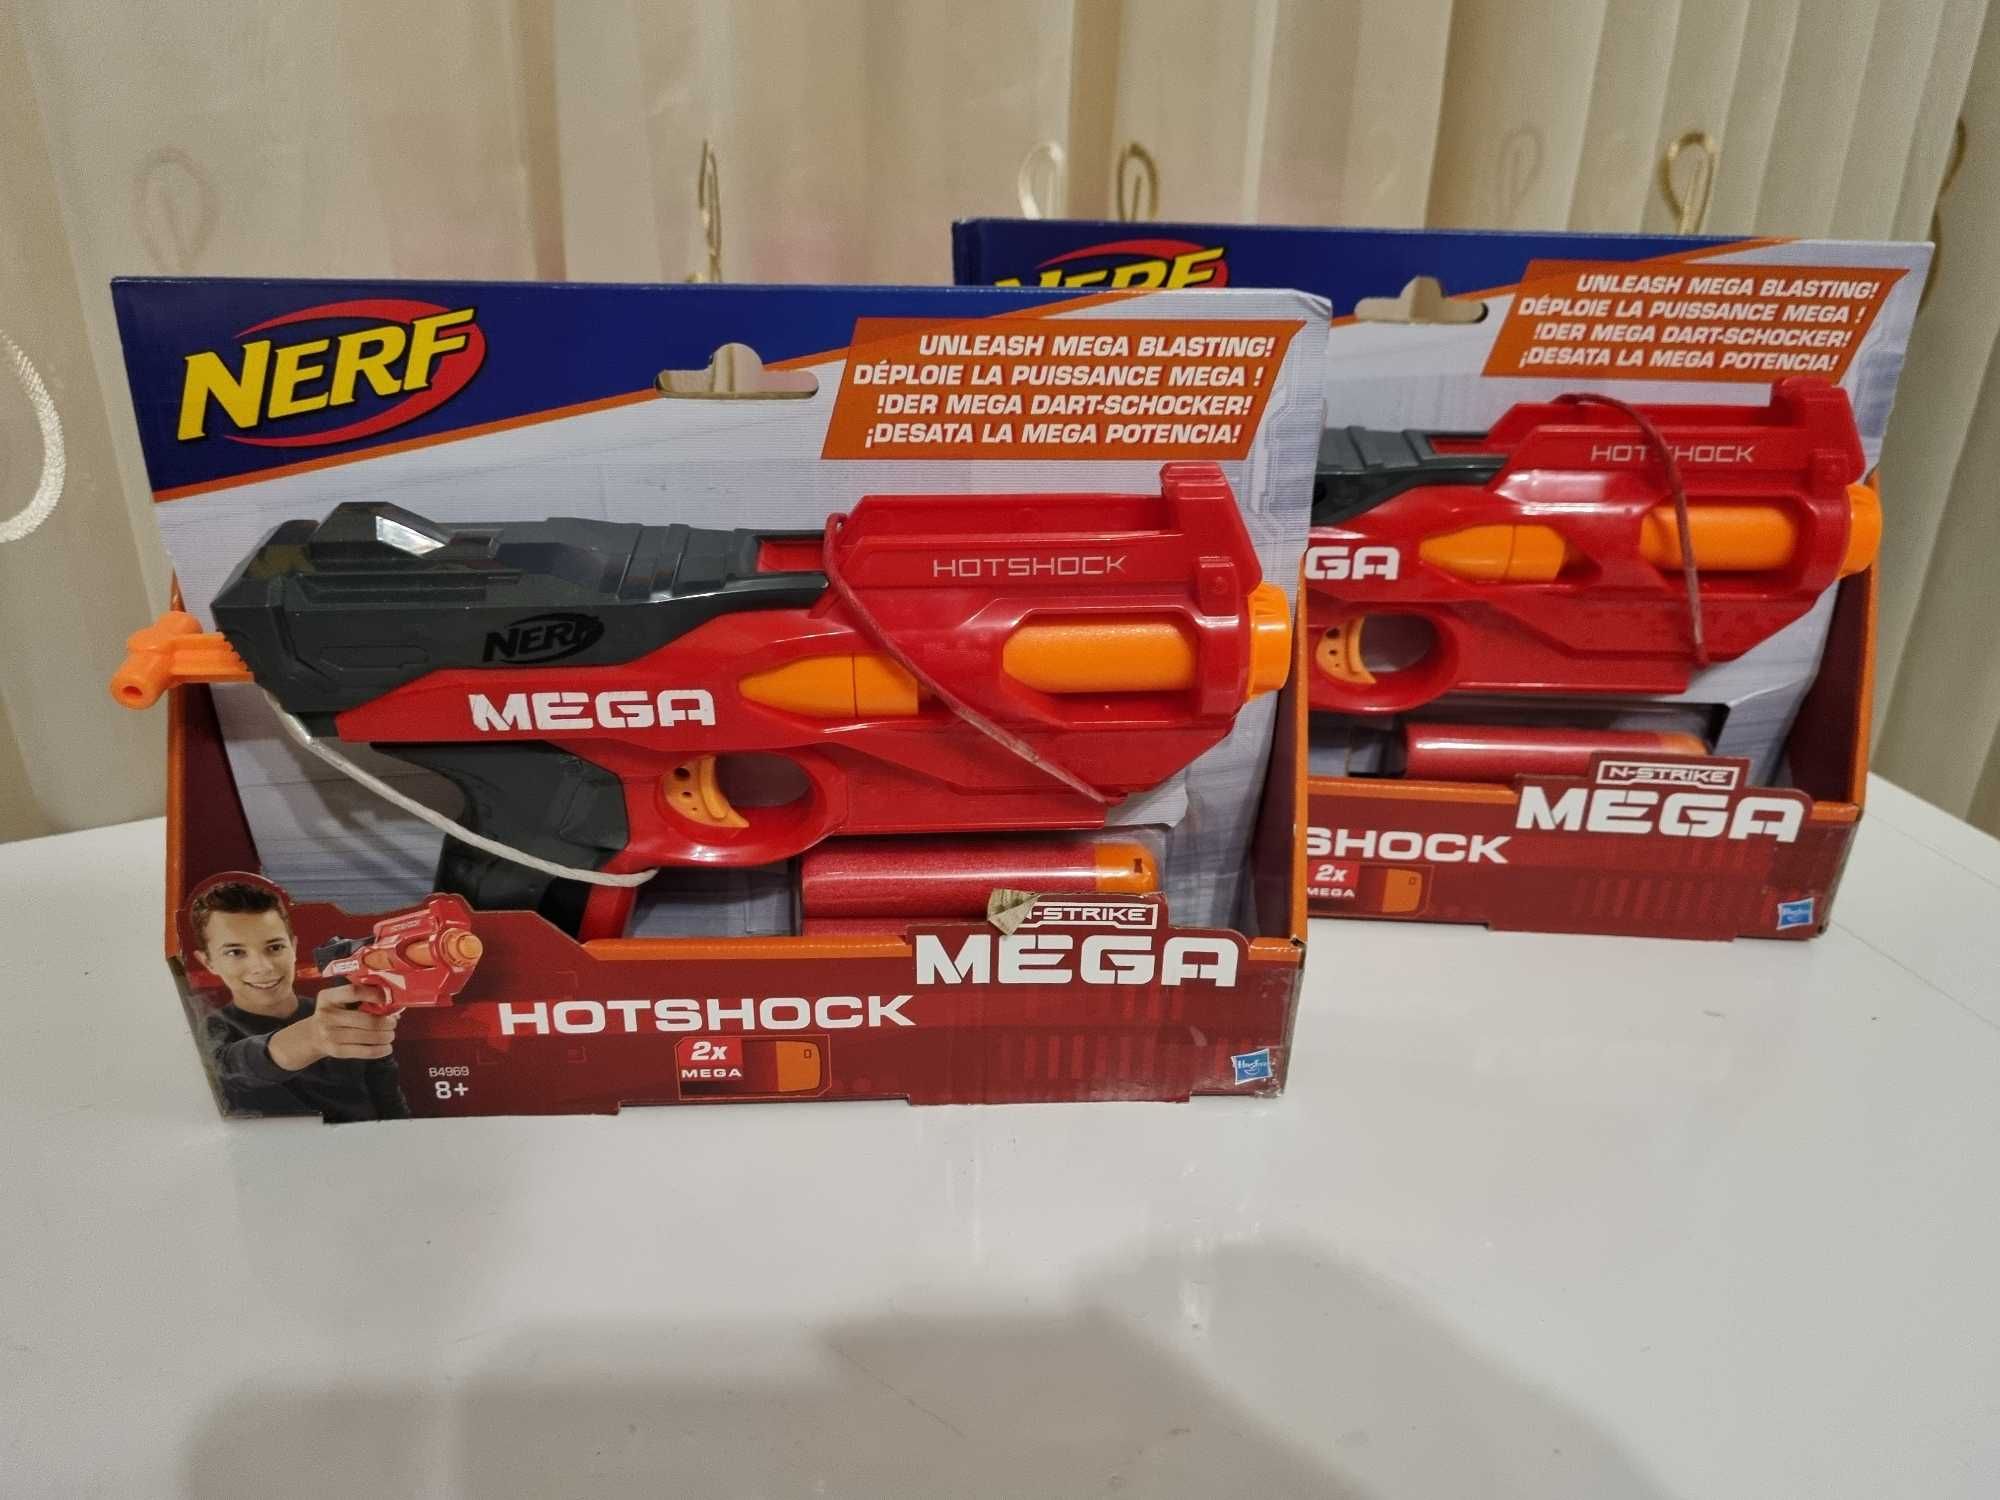 Pistol de jucarie Nerf Mega N-Strike Hotshock, 2 bucati.